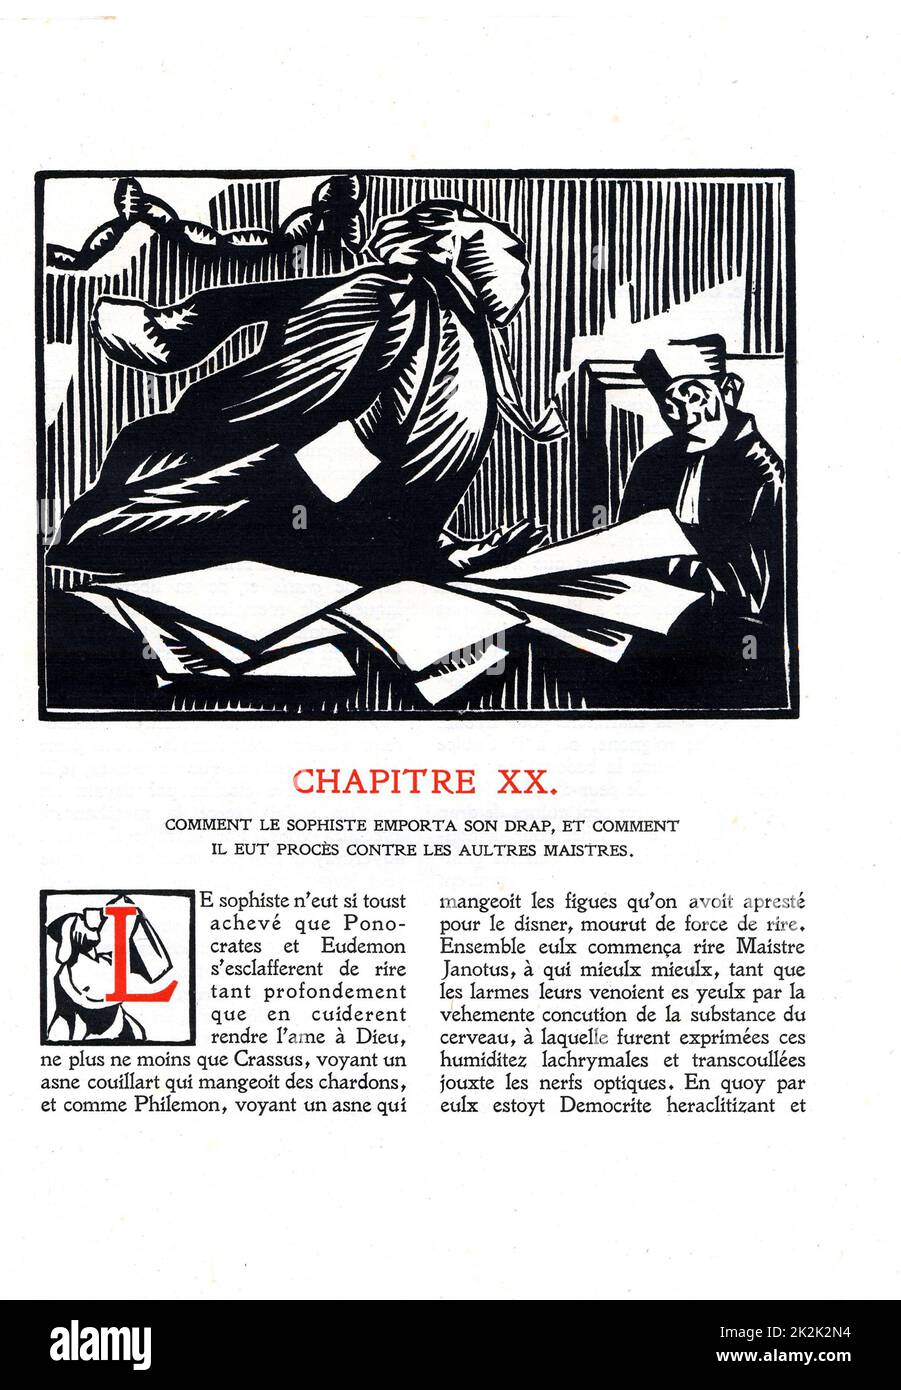 Rabelais : chapiter 4 of 'La vie très horrificque du Grand Gargantua' Woodcut by Hermann Paul Published in 1921 France Private Collection Stock Photo